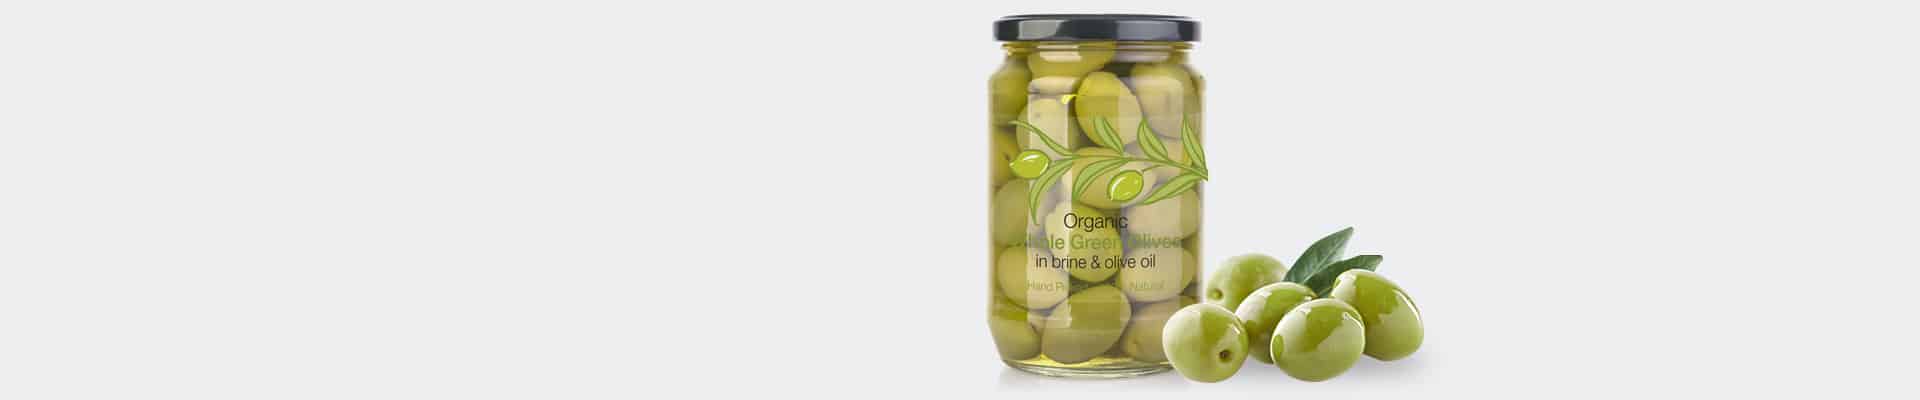 Crown Labels Case Studies Olives